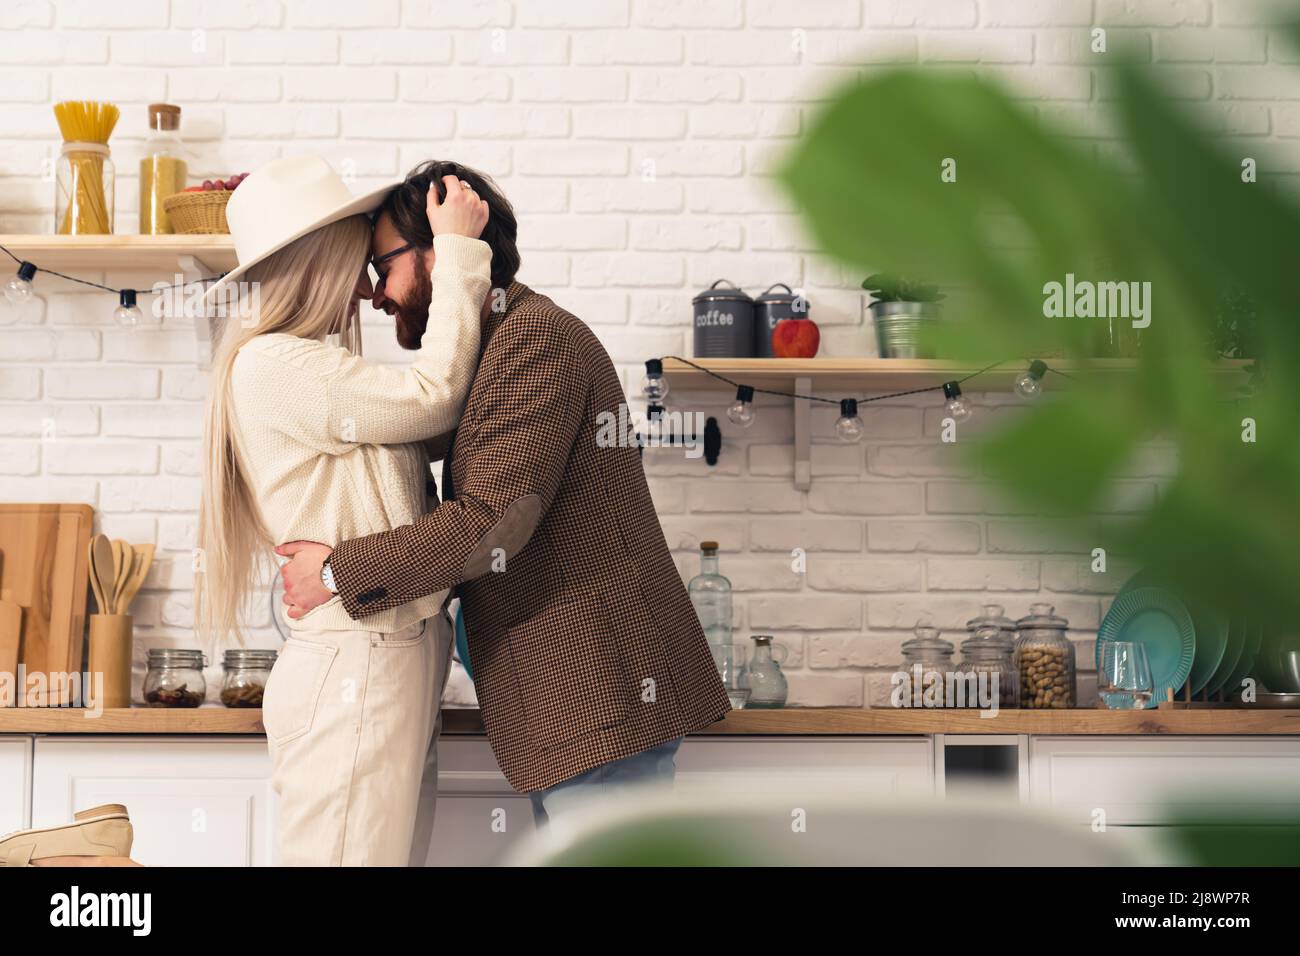 Bell'uomo bearded dai capelli scuri che abbraccia una donna caucasica bionda in piedi in un interno moderno della cucina. Foto di alta qualità Foto Stock